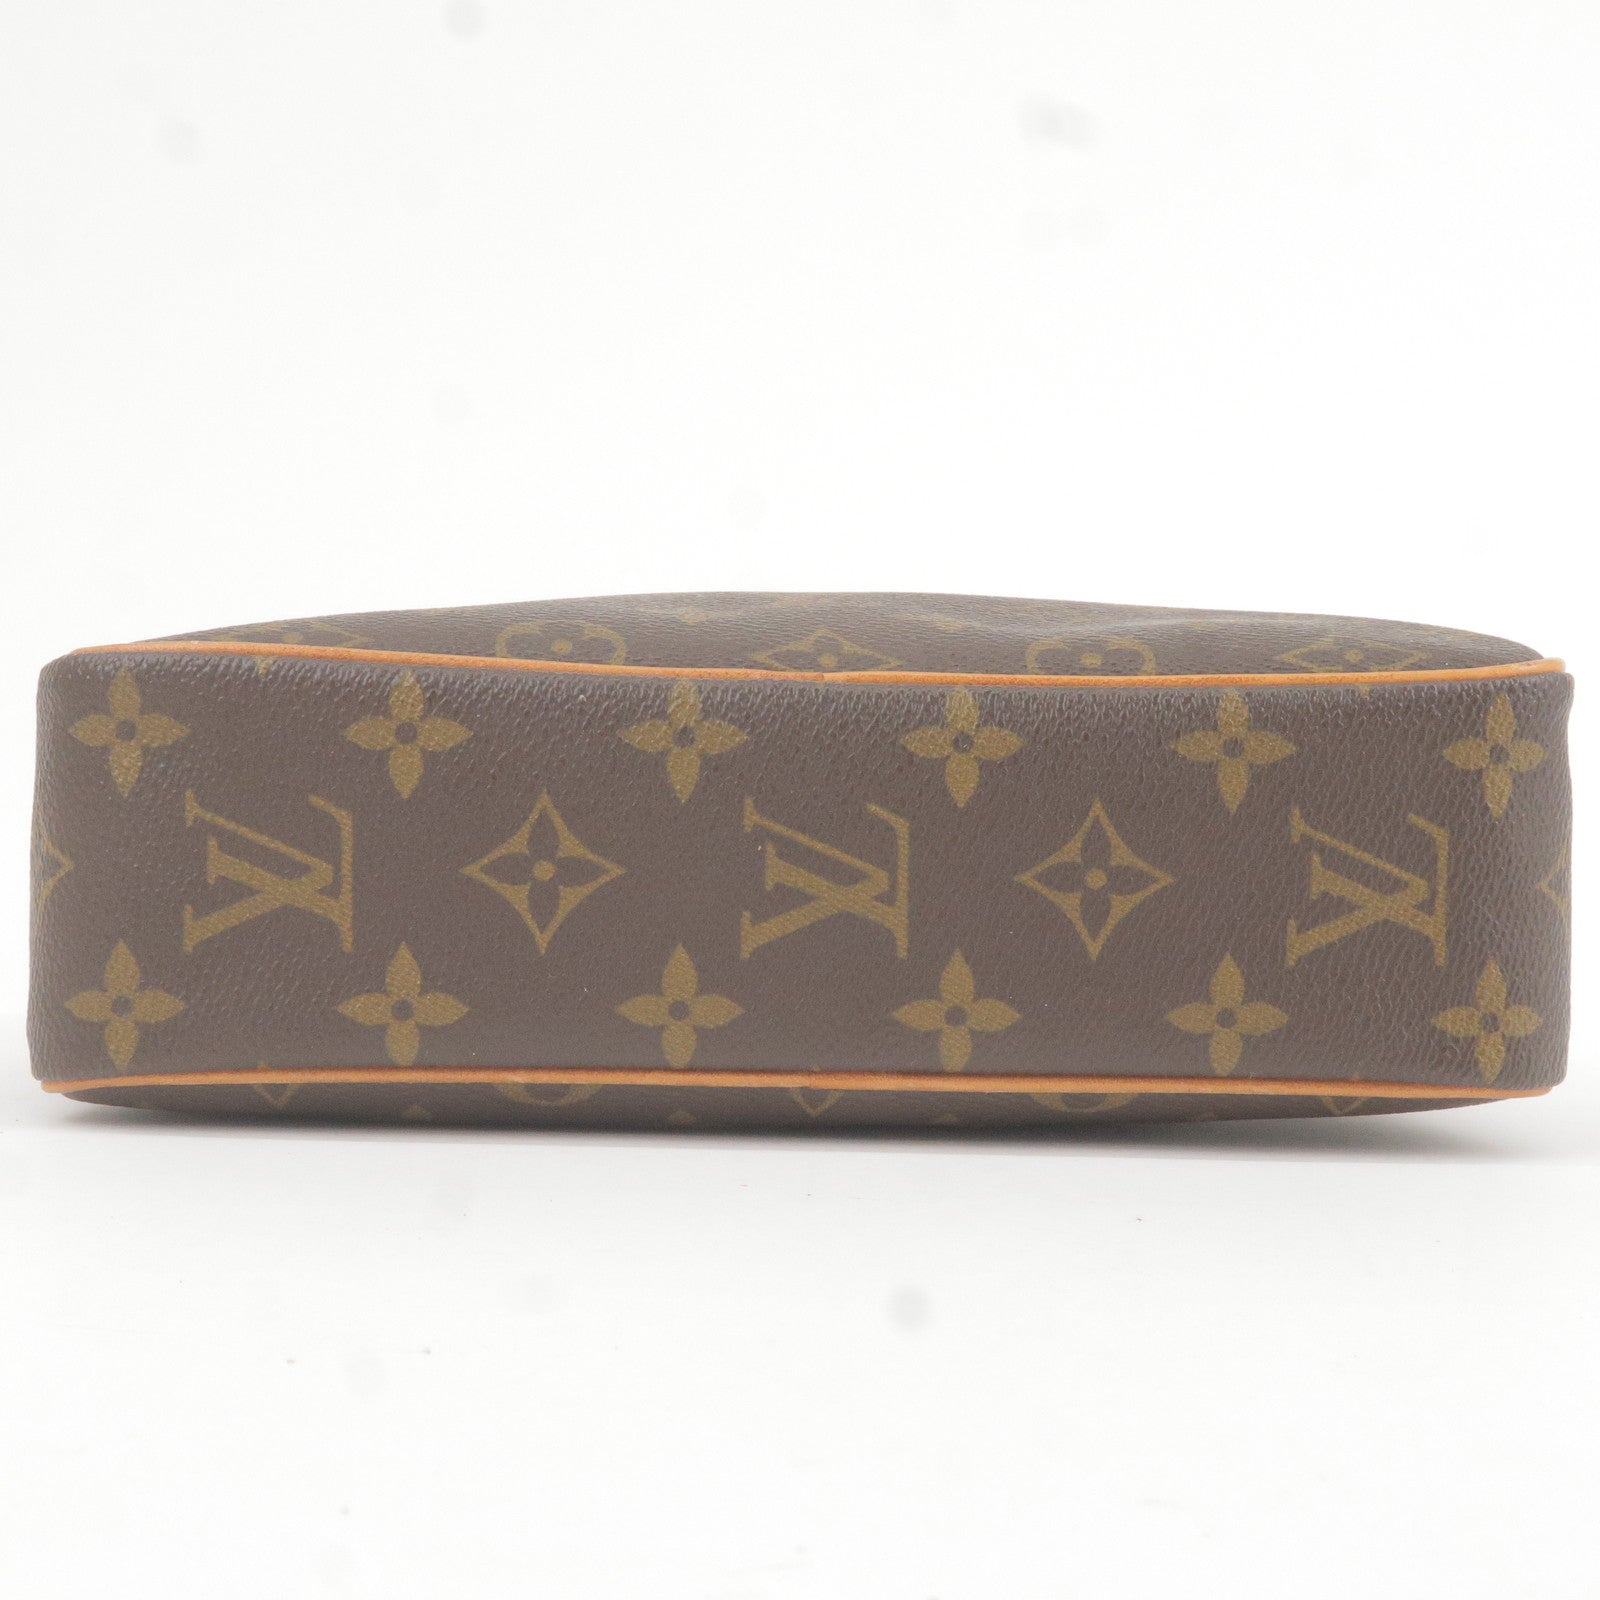 23 - Louis Vuitton Monogram Pouch for Neverfull MM Wristlet Cerise -  Monogram - M51847 – dct - Pouch - Vuitton - Compiegne - Clutch - Bag -  ep_vintage luxury Store - Louis